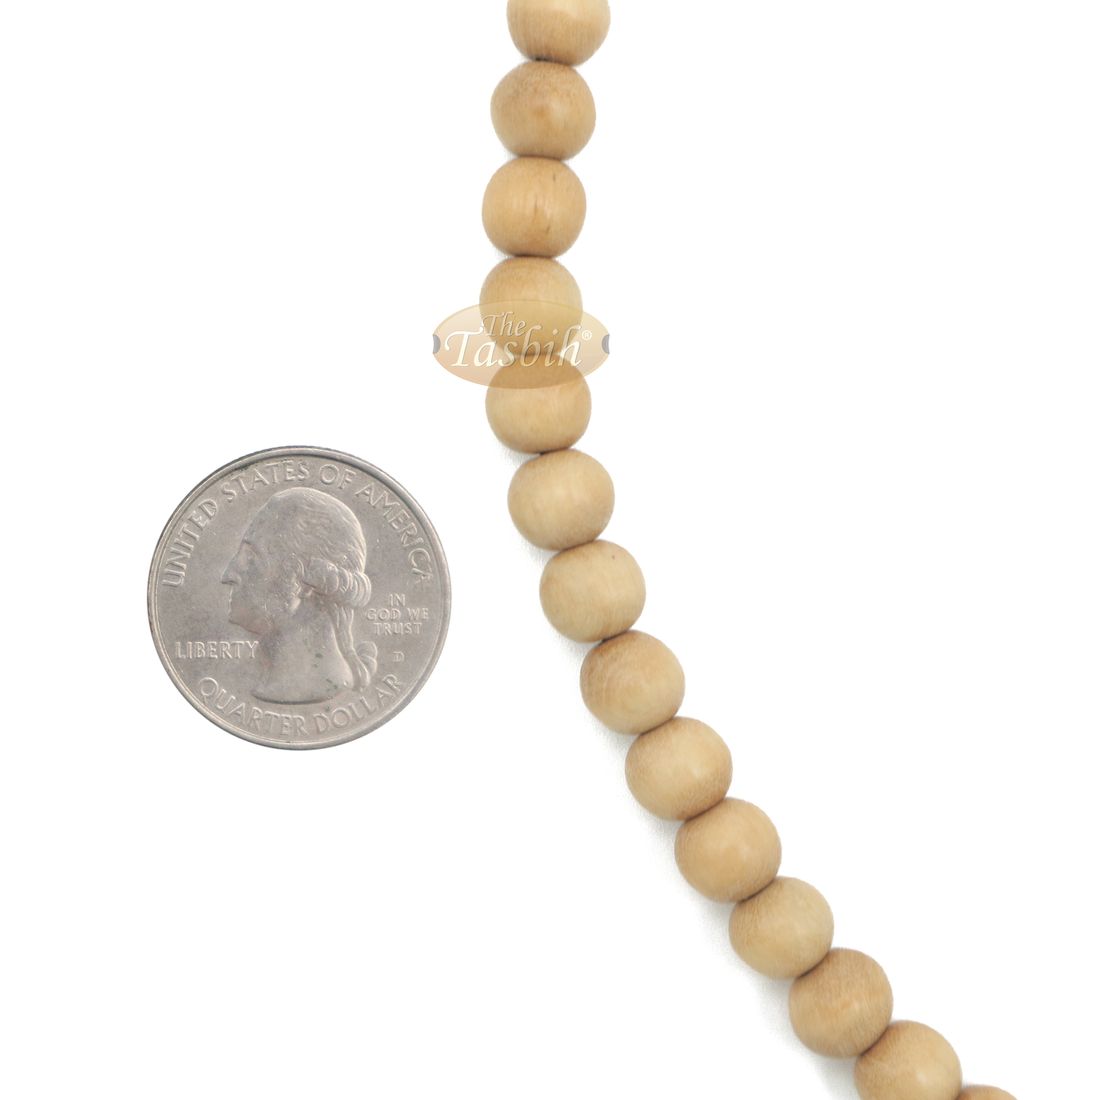 1000-Bead Citrus Wood (kemuning) Tasbih – 8mm Prayer Beads – Subha Misbaha with Beautiful Black Tassels